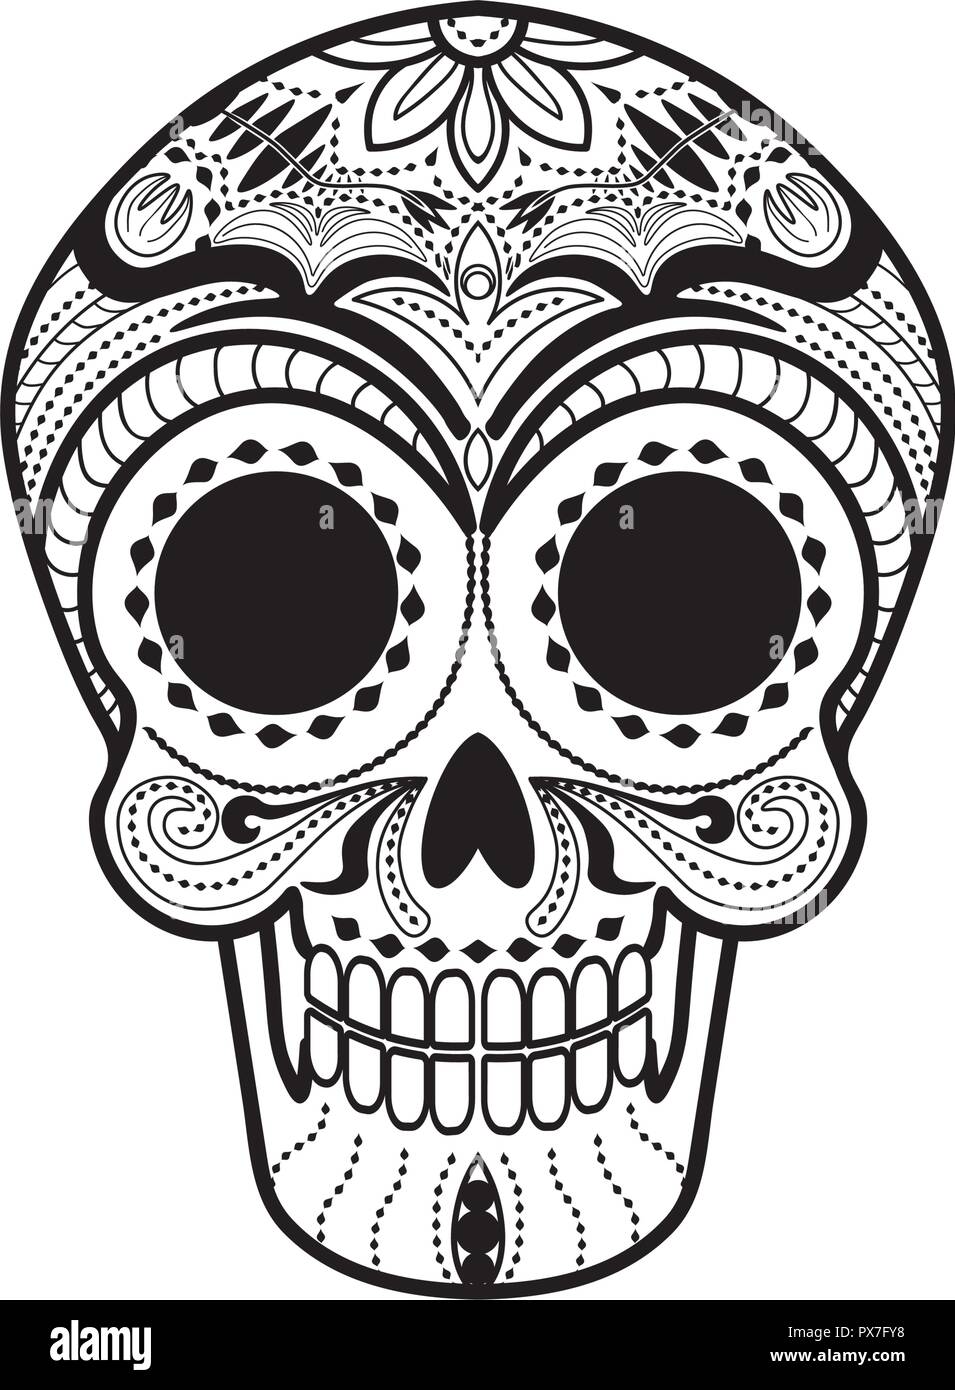 Calavera messicana cranio Illustrazione Vettoriale